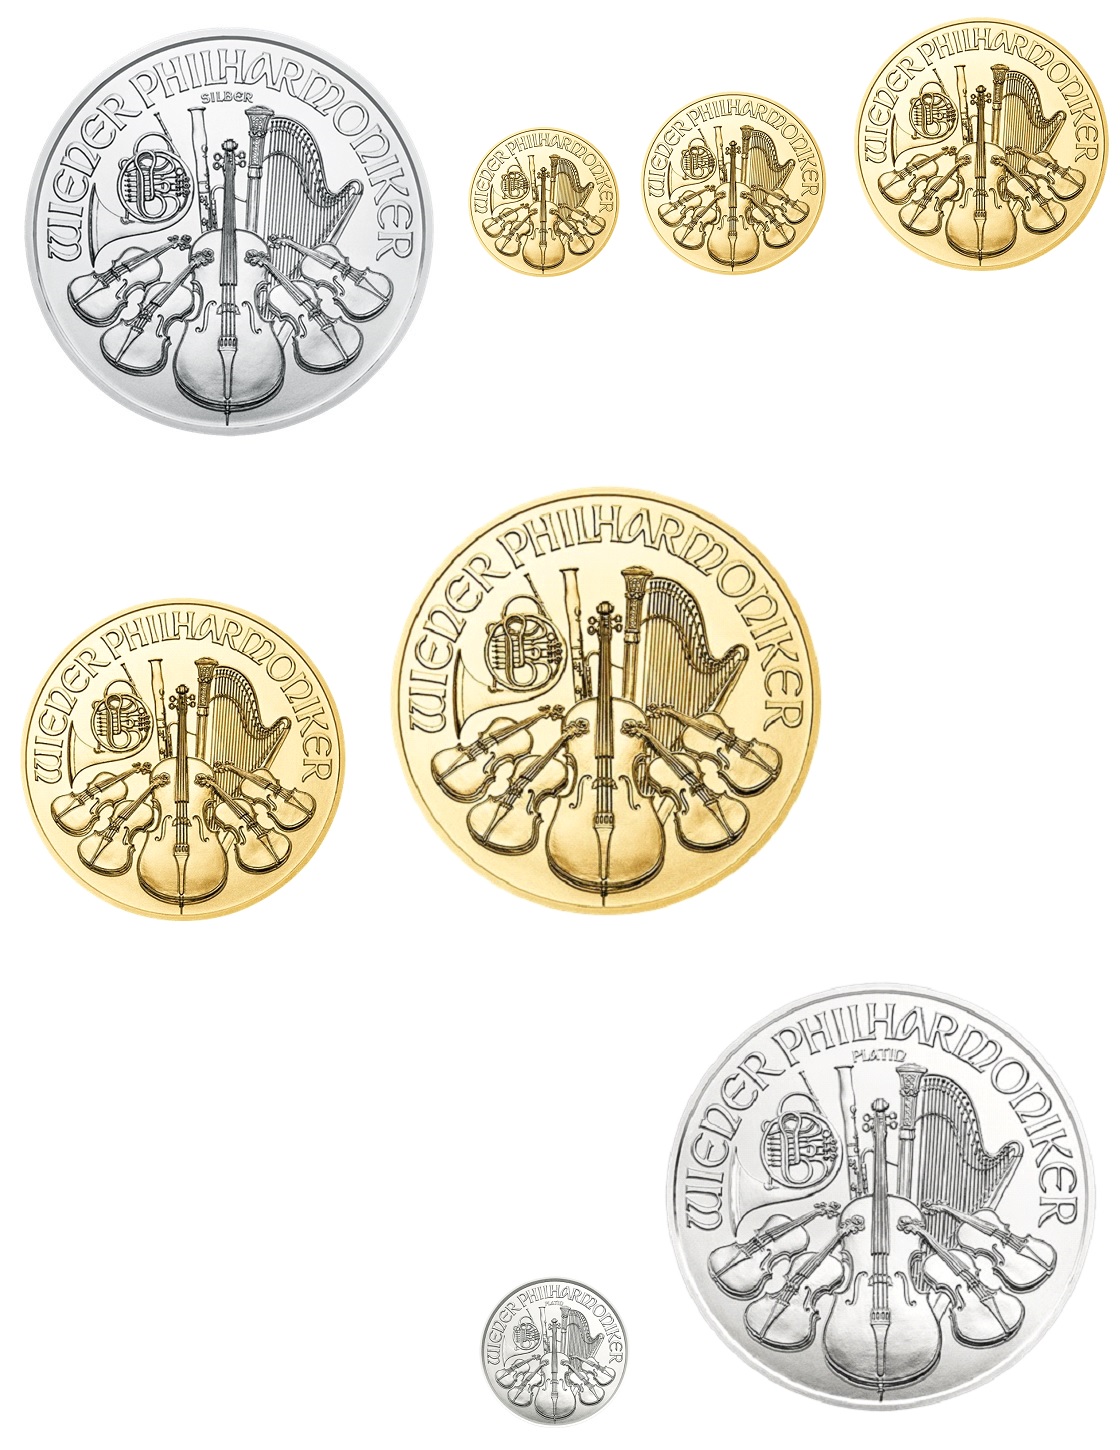 Autriche 2021 Philharmonique (série des 8 monnaies) Elysées